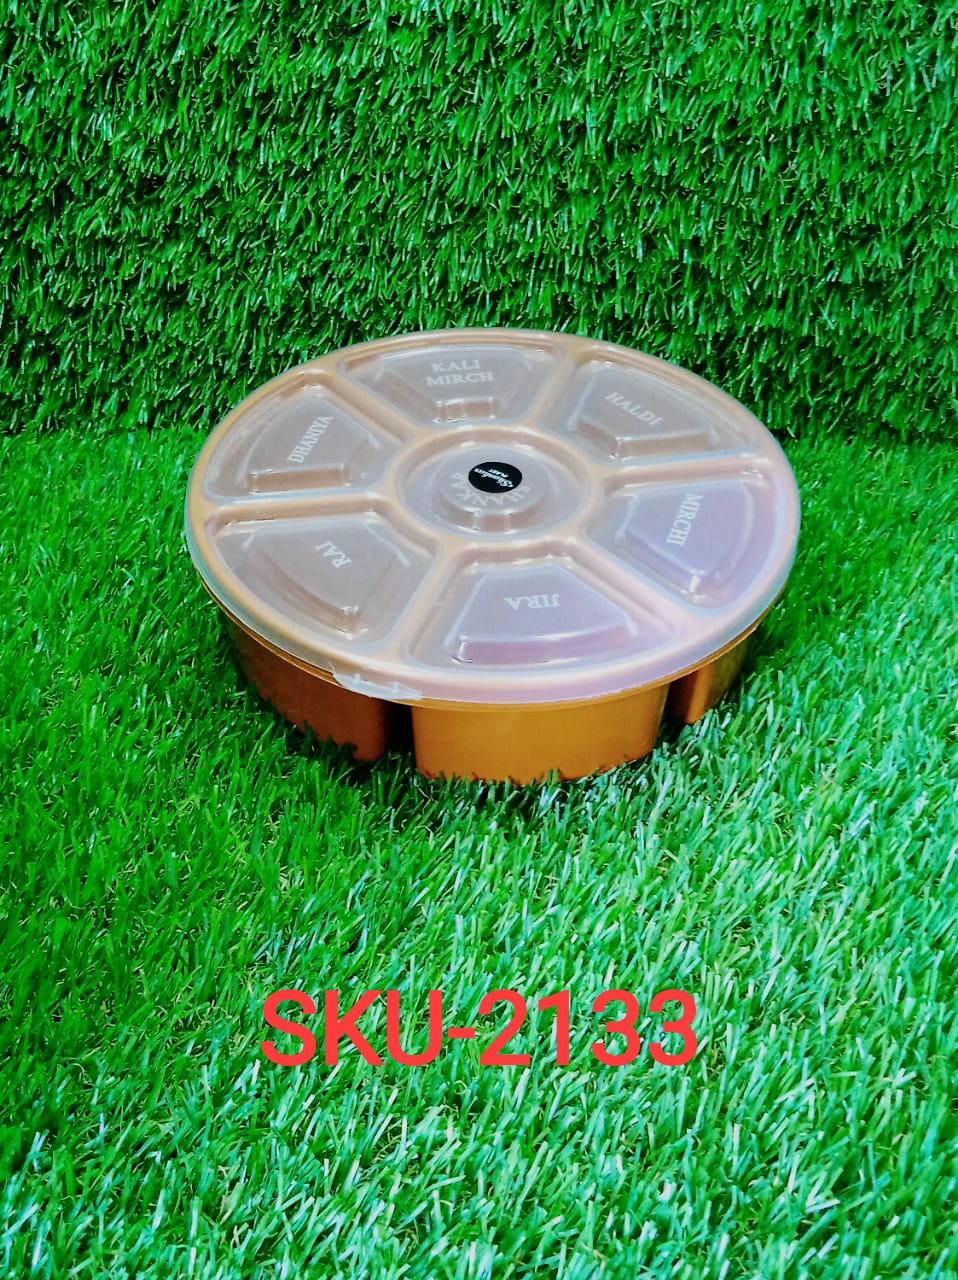 2133 Mini Spice Box/Masala Dabba with 7 Compartments DeoDap